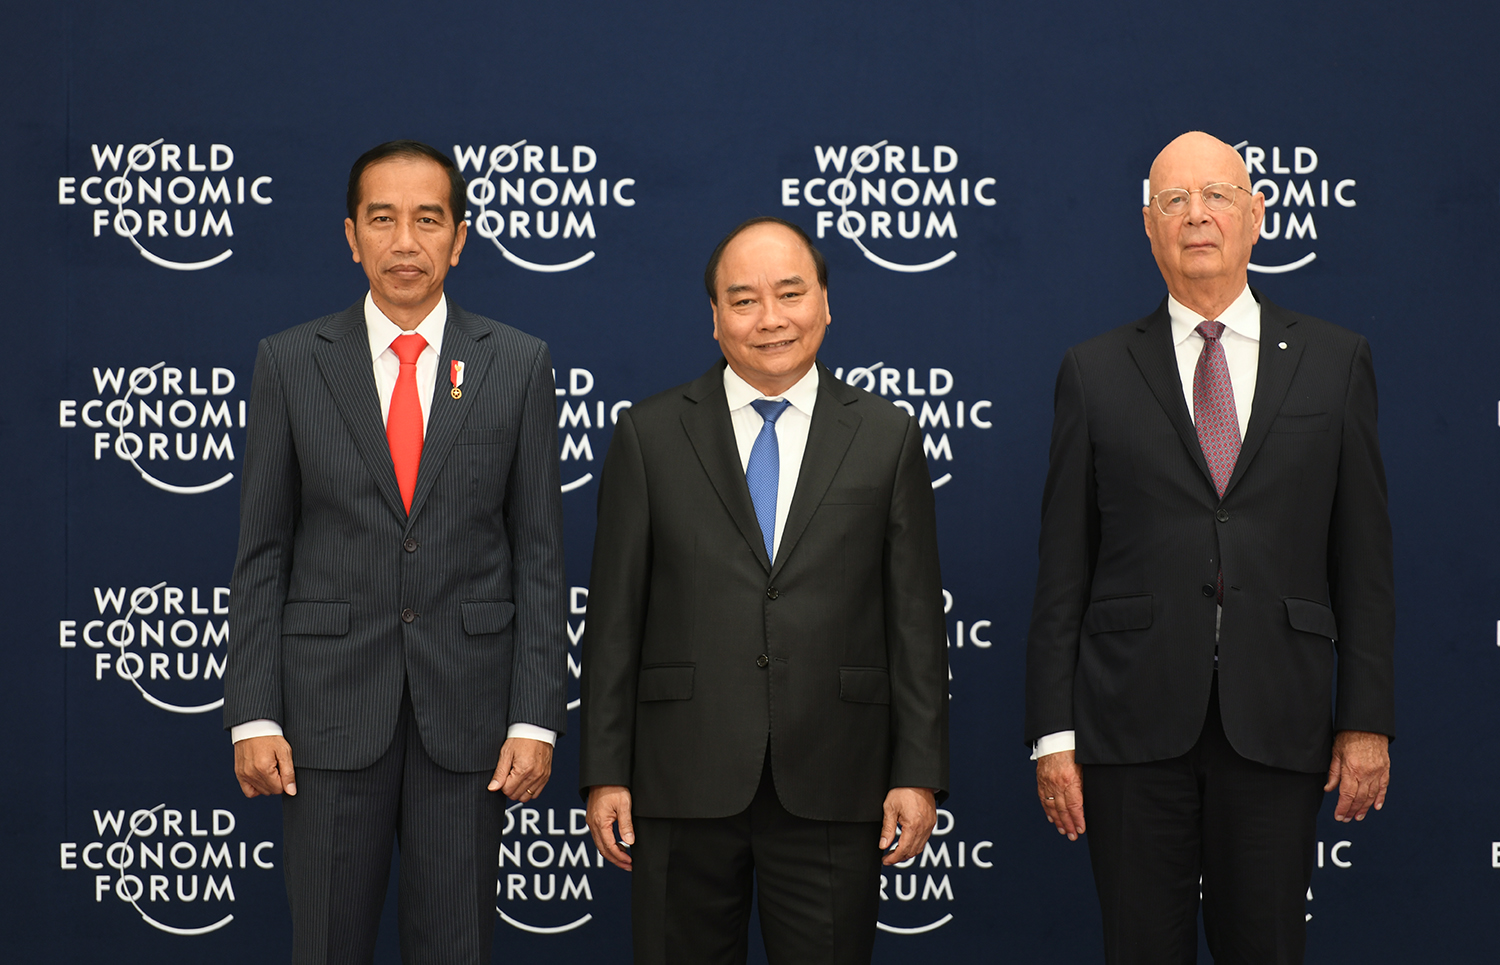 Thủ tướng Nguyễn Xuân Phúc và Chủ tịch WEF Klaus Schwab đón Tổng thống Indonesia Joko Widodo. Ảnh: VGP